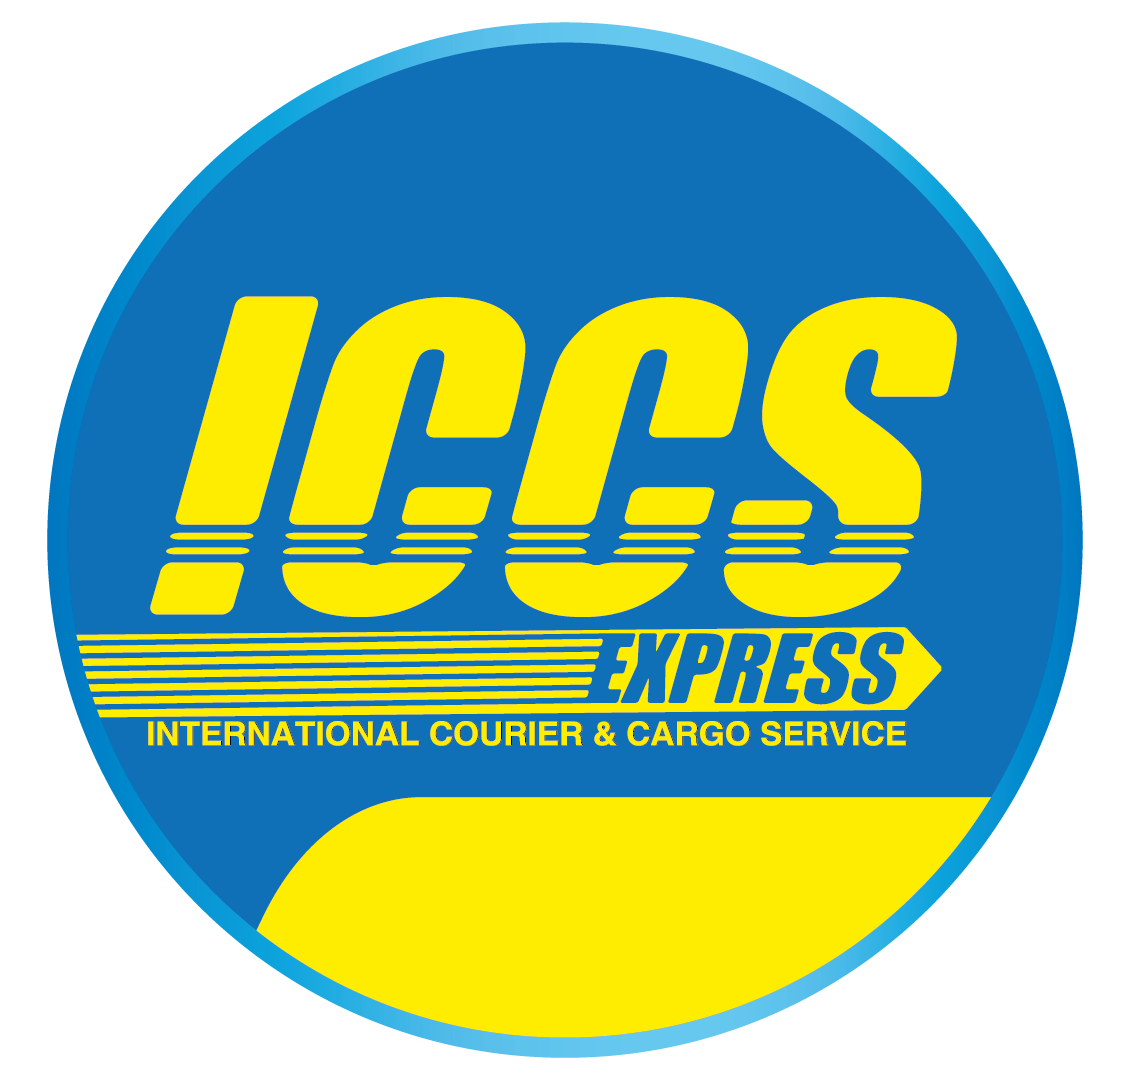 ICCS Express